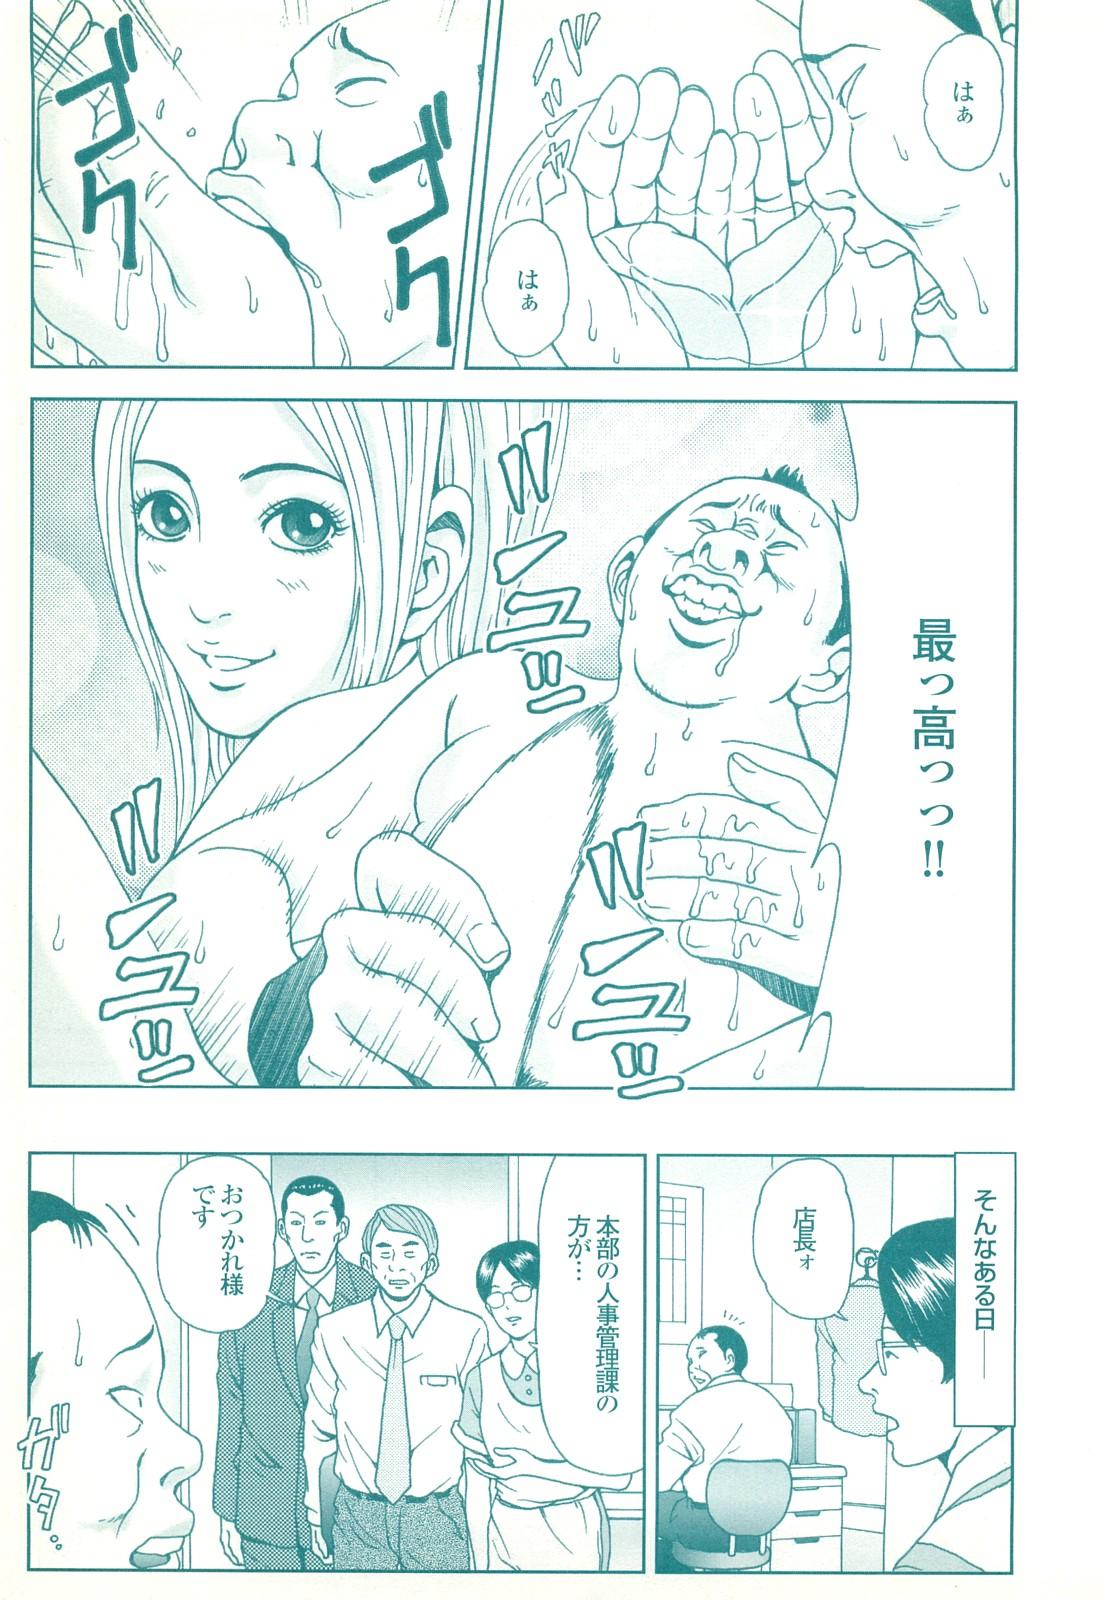 コミック裏モノJAPAN Vol.18 今井のりたつスペシャル号 190